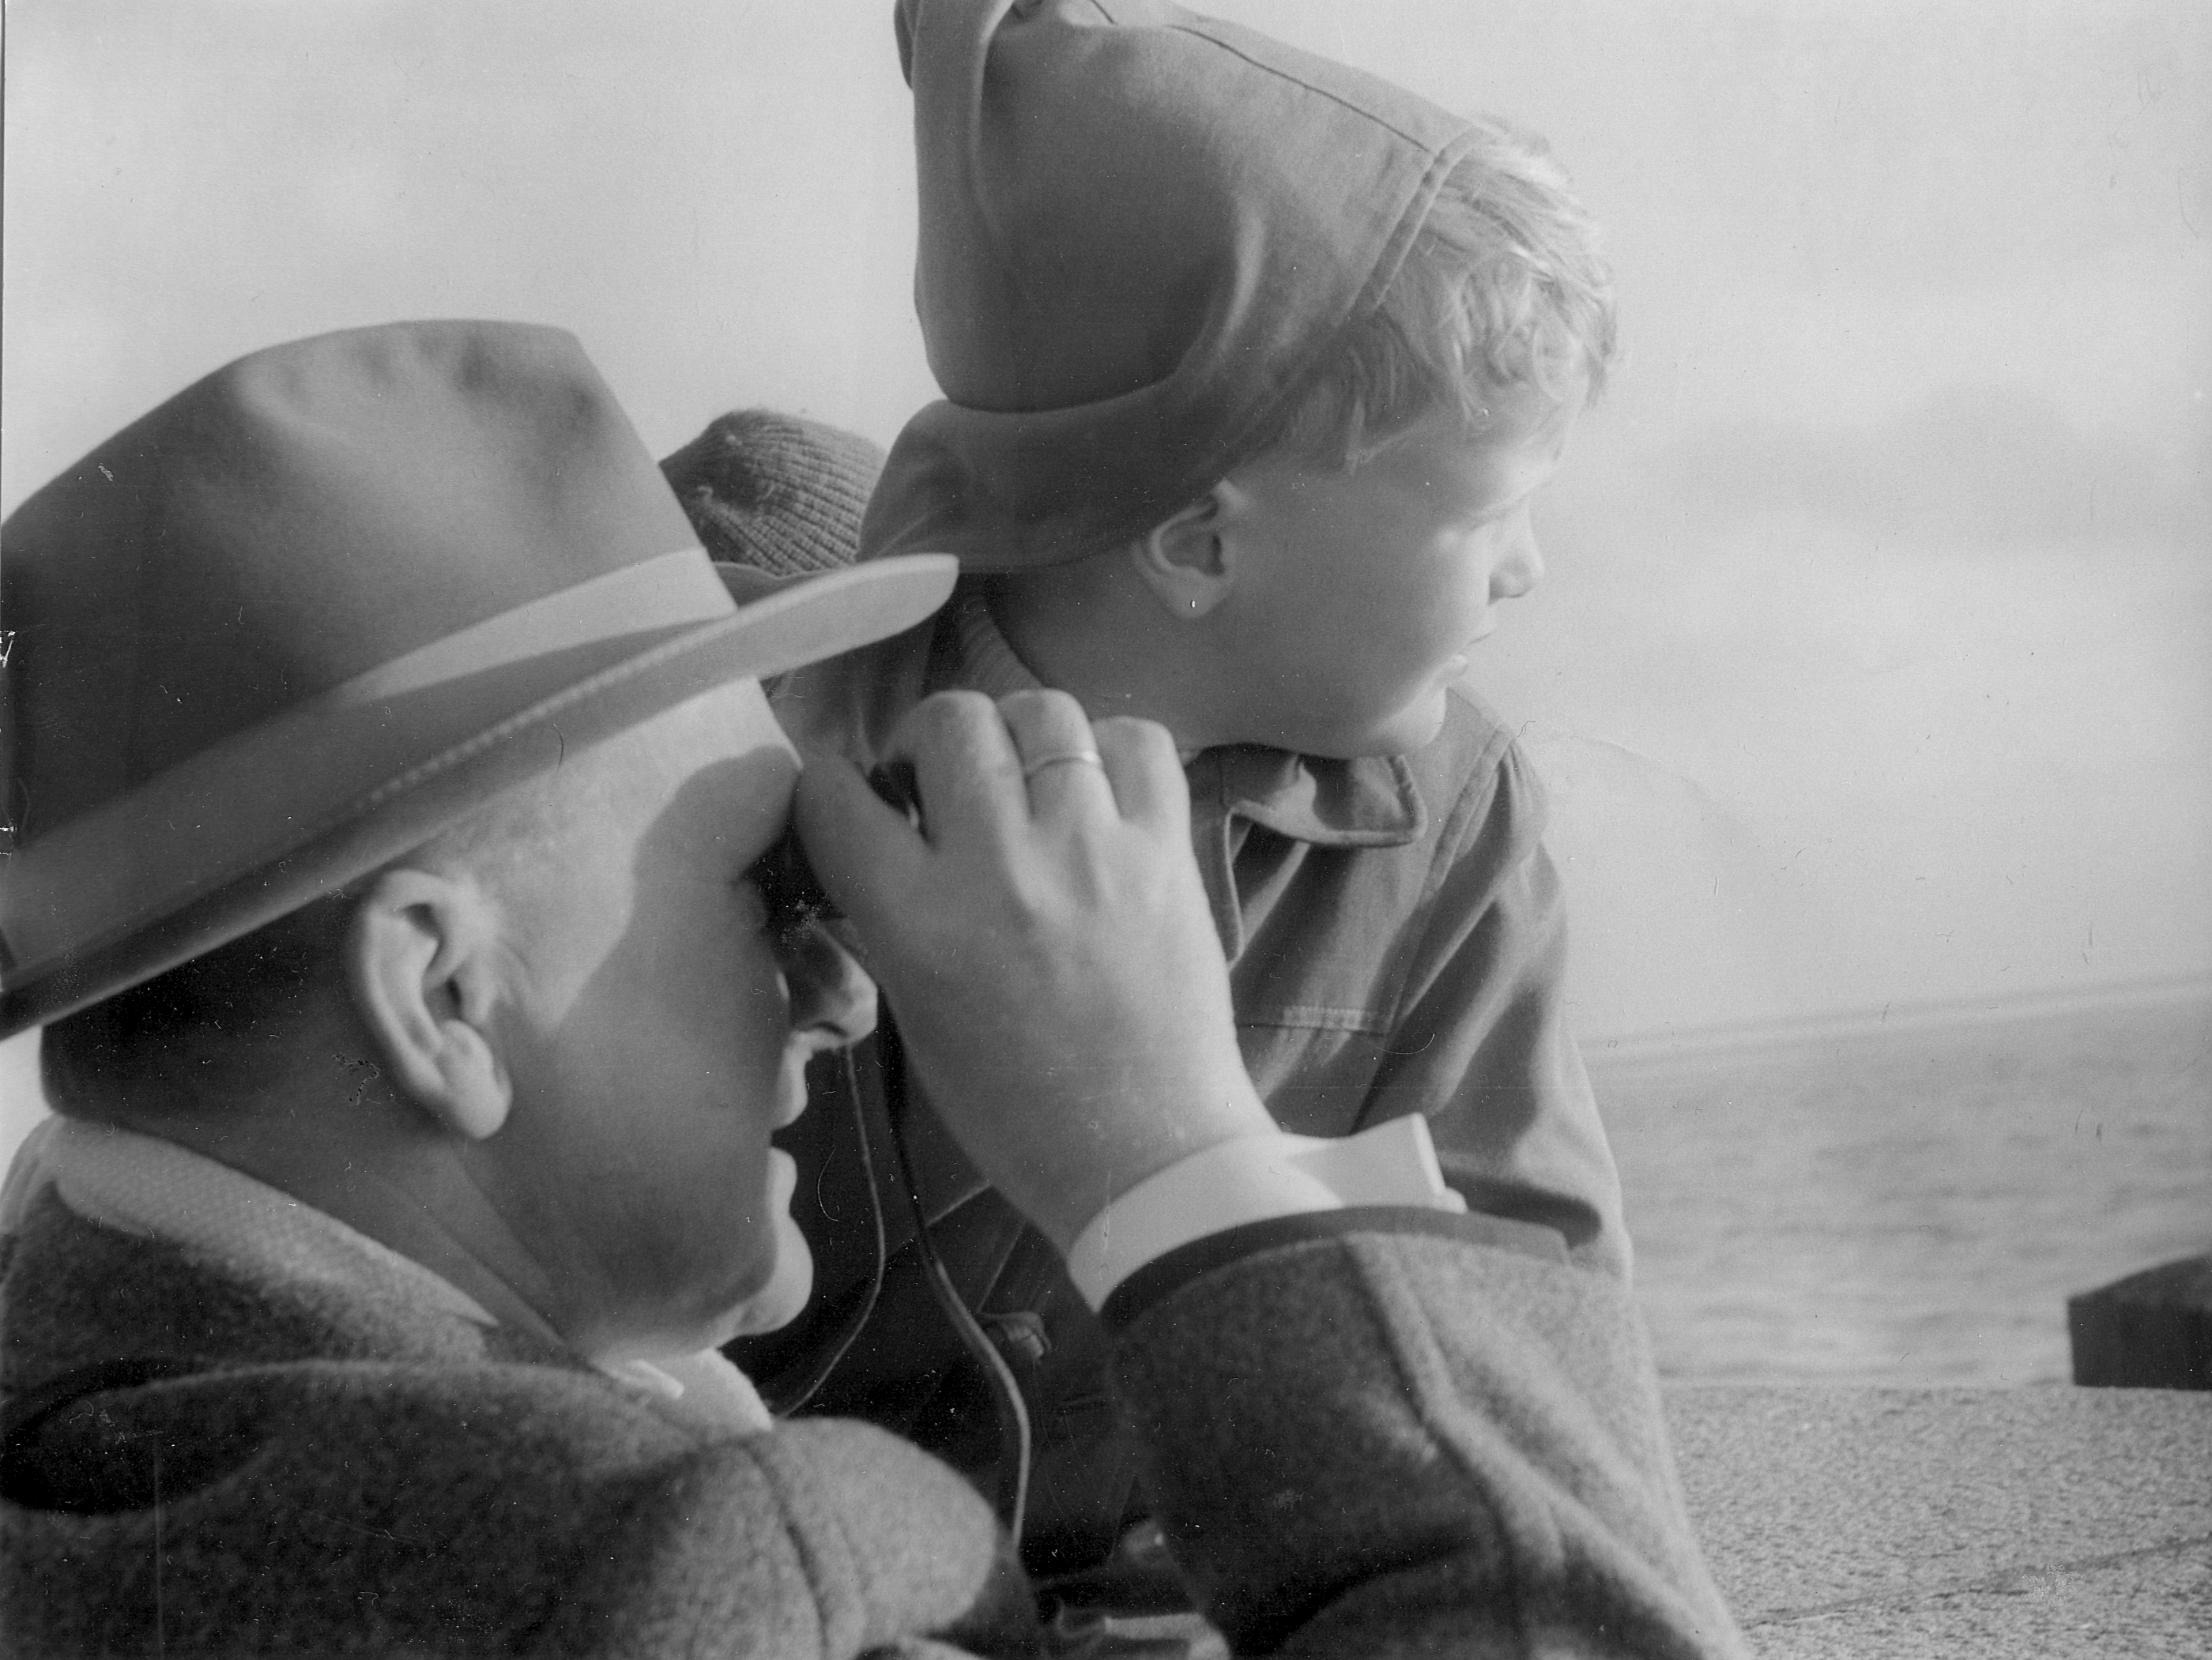 Schwarz-Weiß-Foto: Ein Emder mit seinem Sohn auf der Mole in Emden im Jahre 1960. Fotografin: I.O.